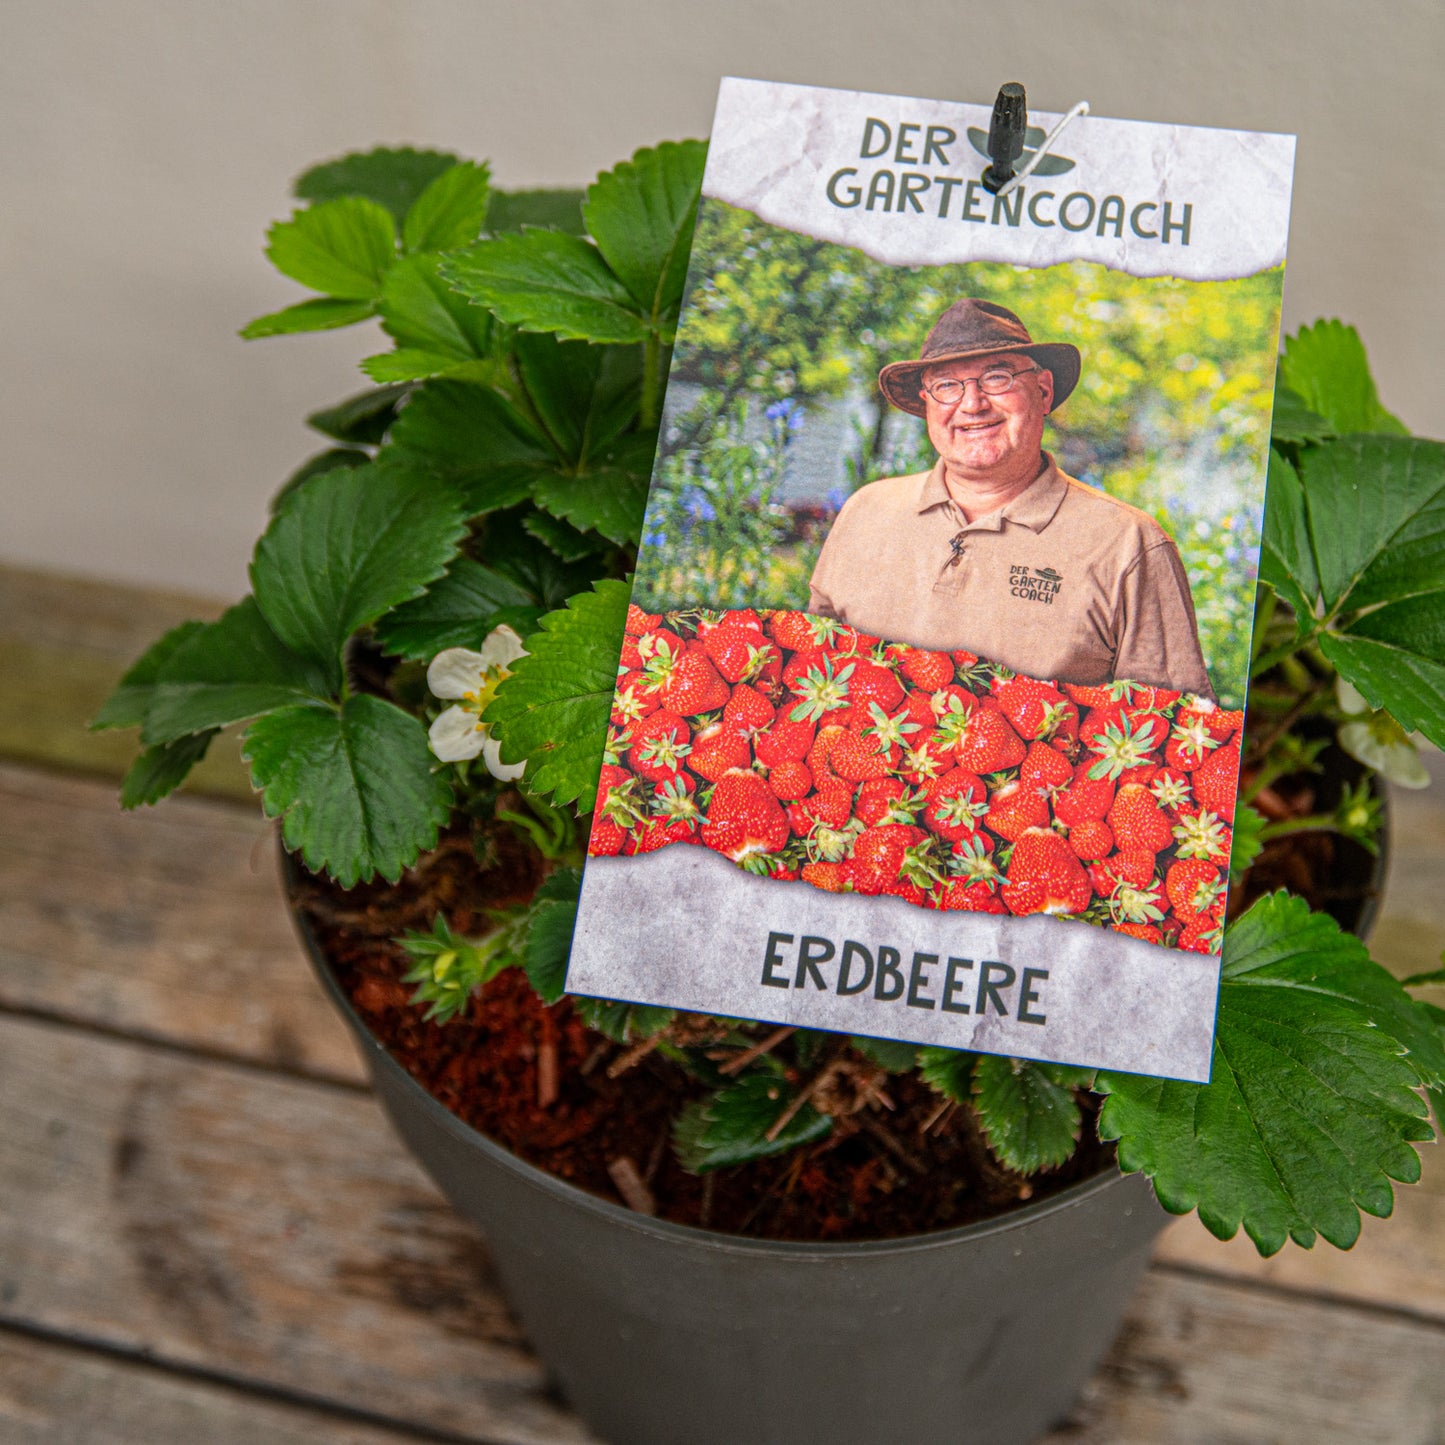 Erdbeere "Der Gartencoach" - Fragaria ananassa im 4,6-Liter-Topf